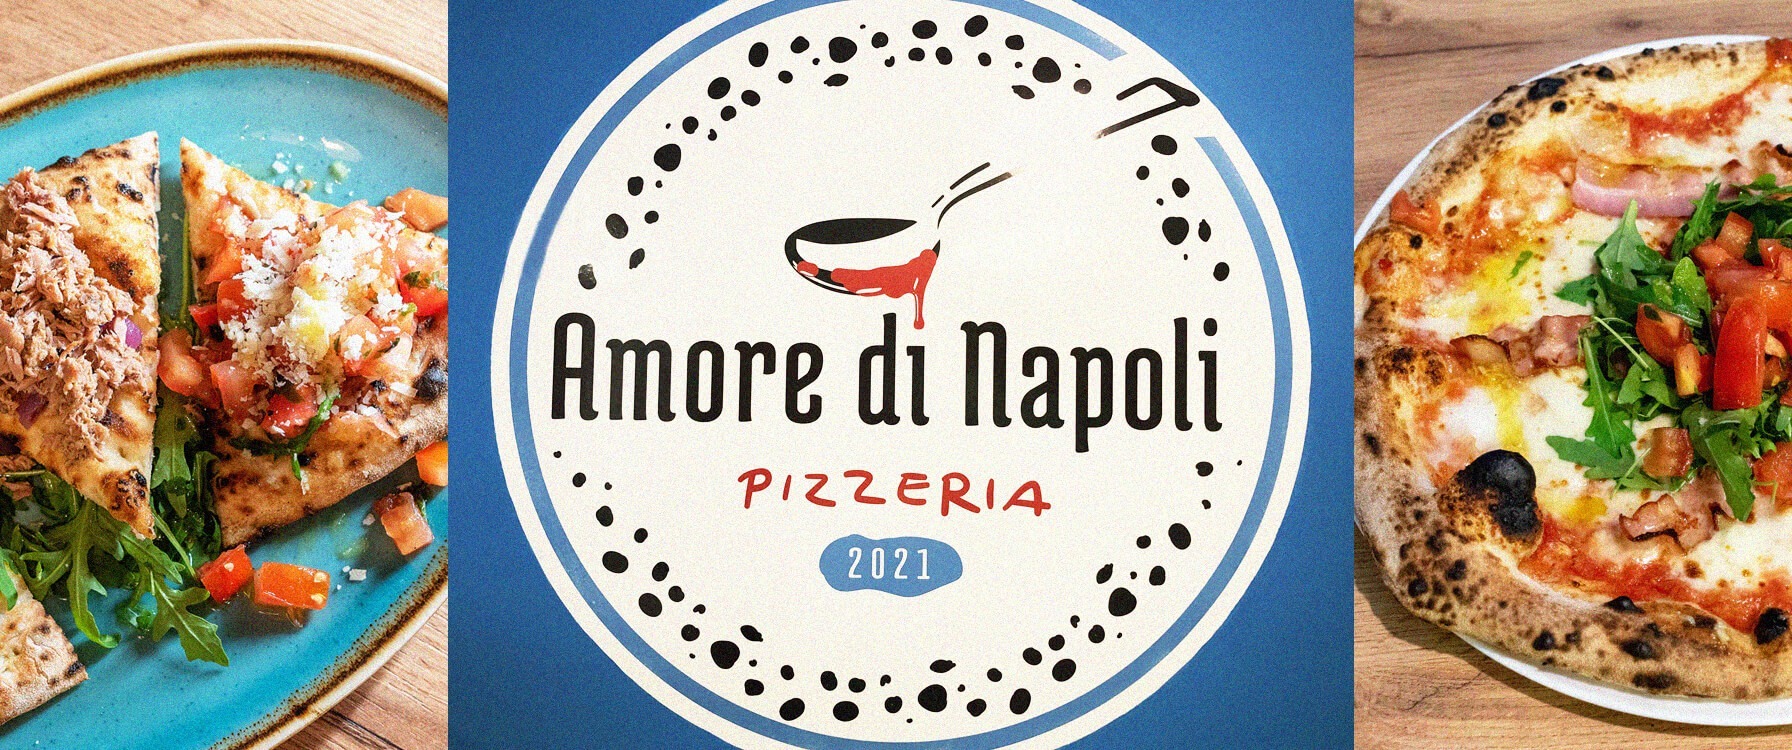 nápolyi pizza - Amore di Napoli